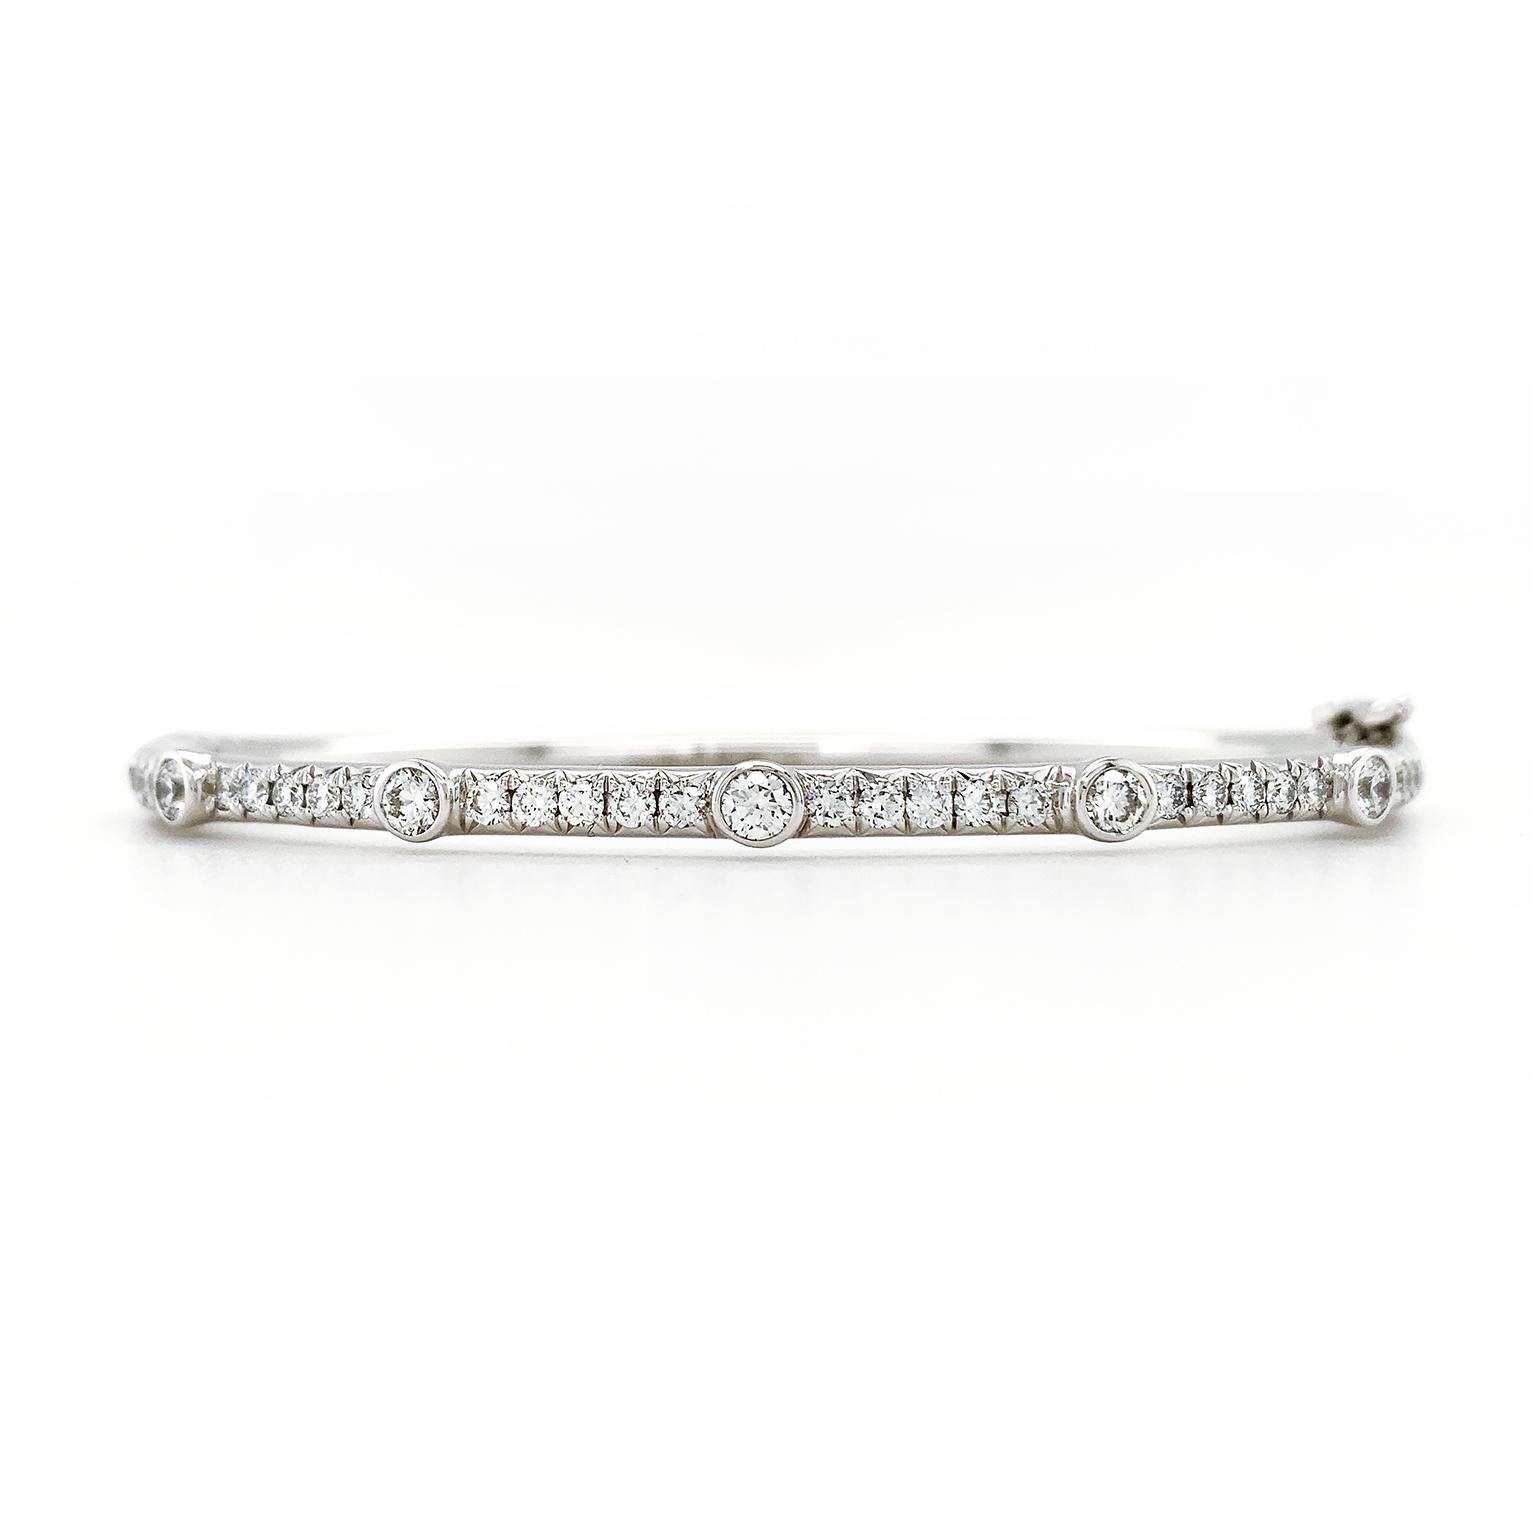 Un bracelet en or blanc 18 carats est rehaussé par le scintillement des diamants sertis pave. 5 diamants ronds de taille brillant sertis en chaton sont soigneusement répartis sur l'ensemble du bracelet pour en rehausser l'éclat. Le bracelet est